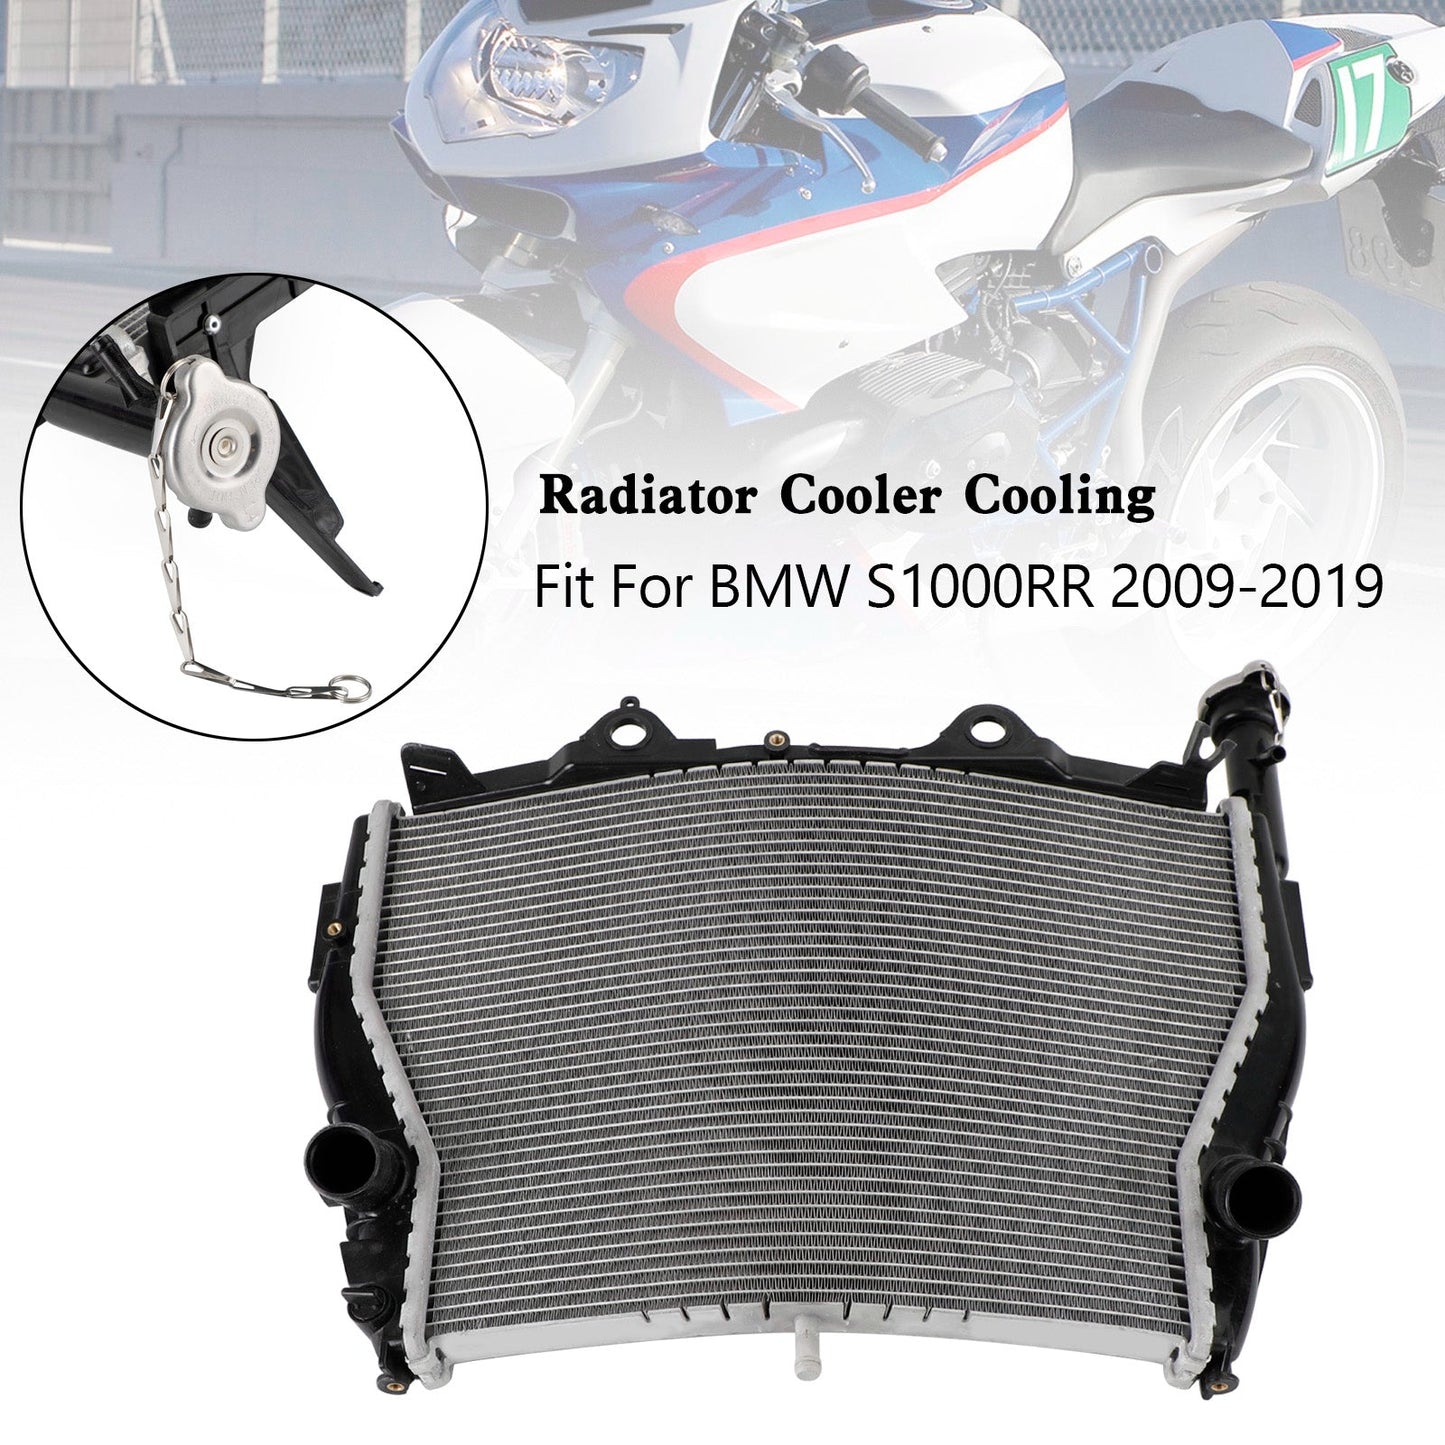 2009-2019 BMW S1000RR Engine Radiator Cooler Cooling